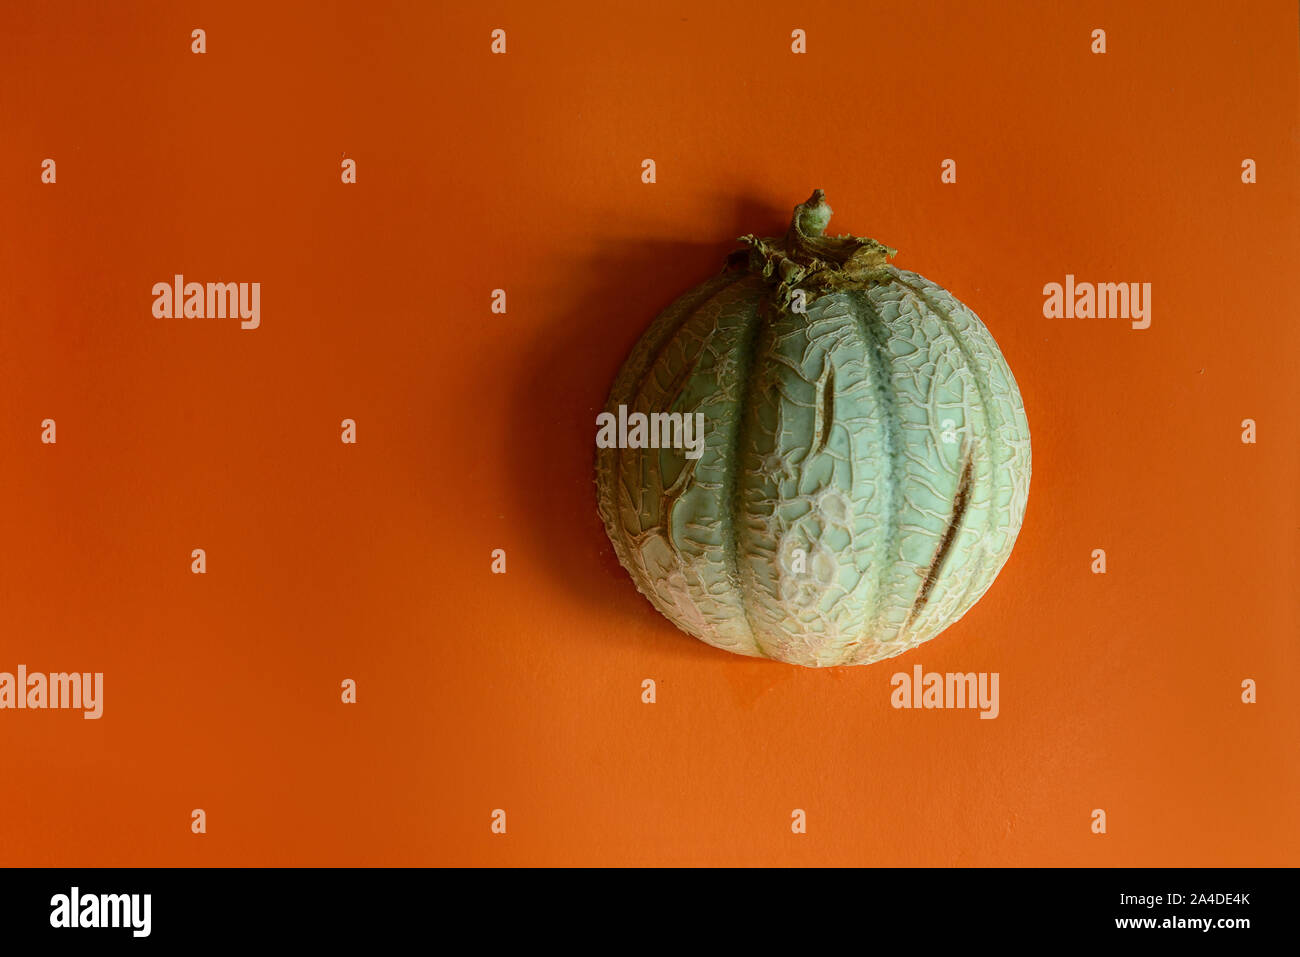 Green cantaloupe on orange background Stock Photo